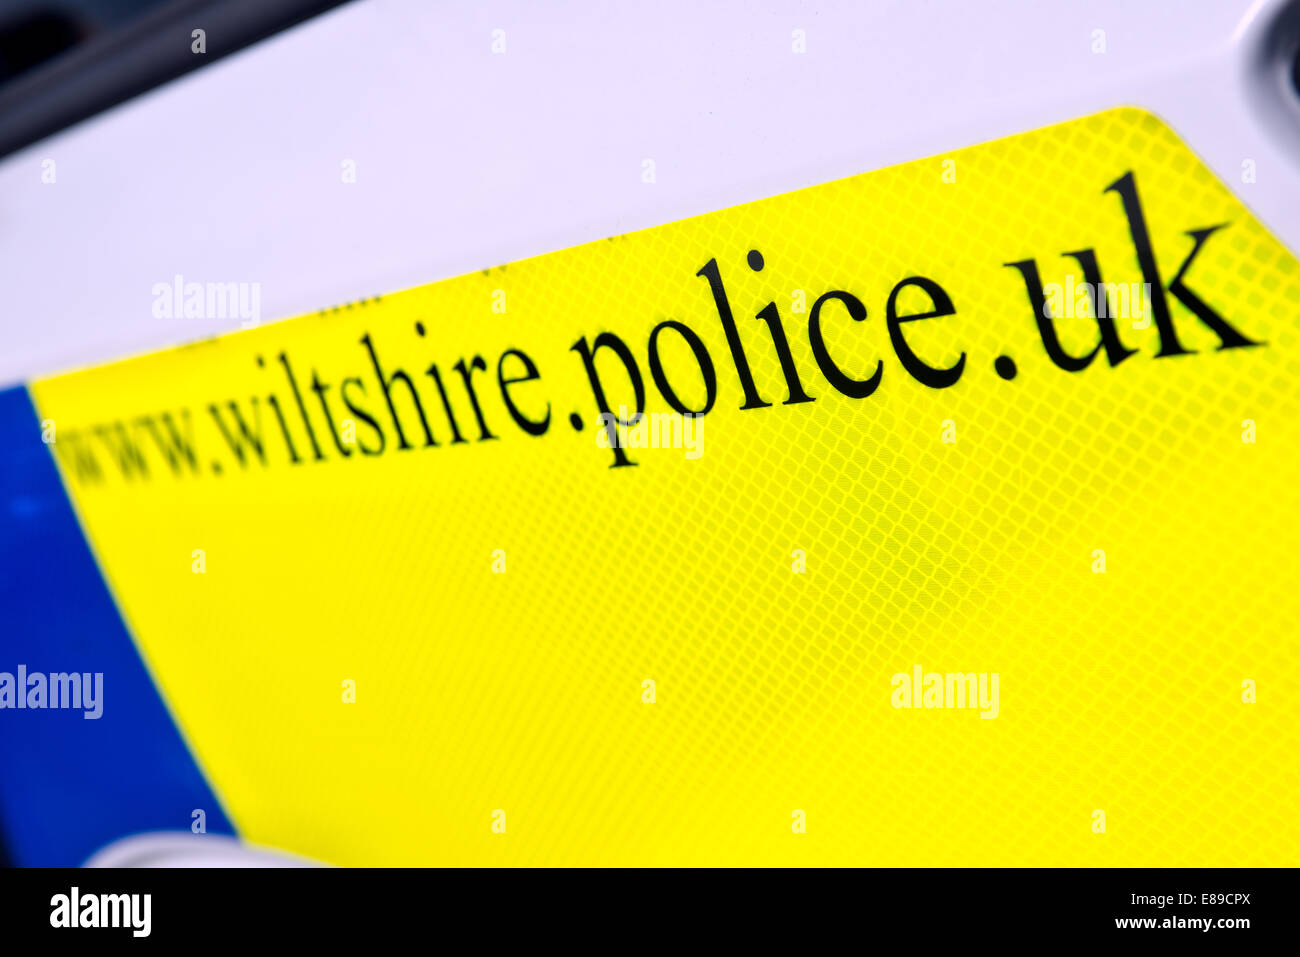 La journée glo signe sur le côté d'un livre blanc britannique, Wiltshire voiture de police étant donné l'adresse du site web de la gendarmerie locale Banque D'Images